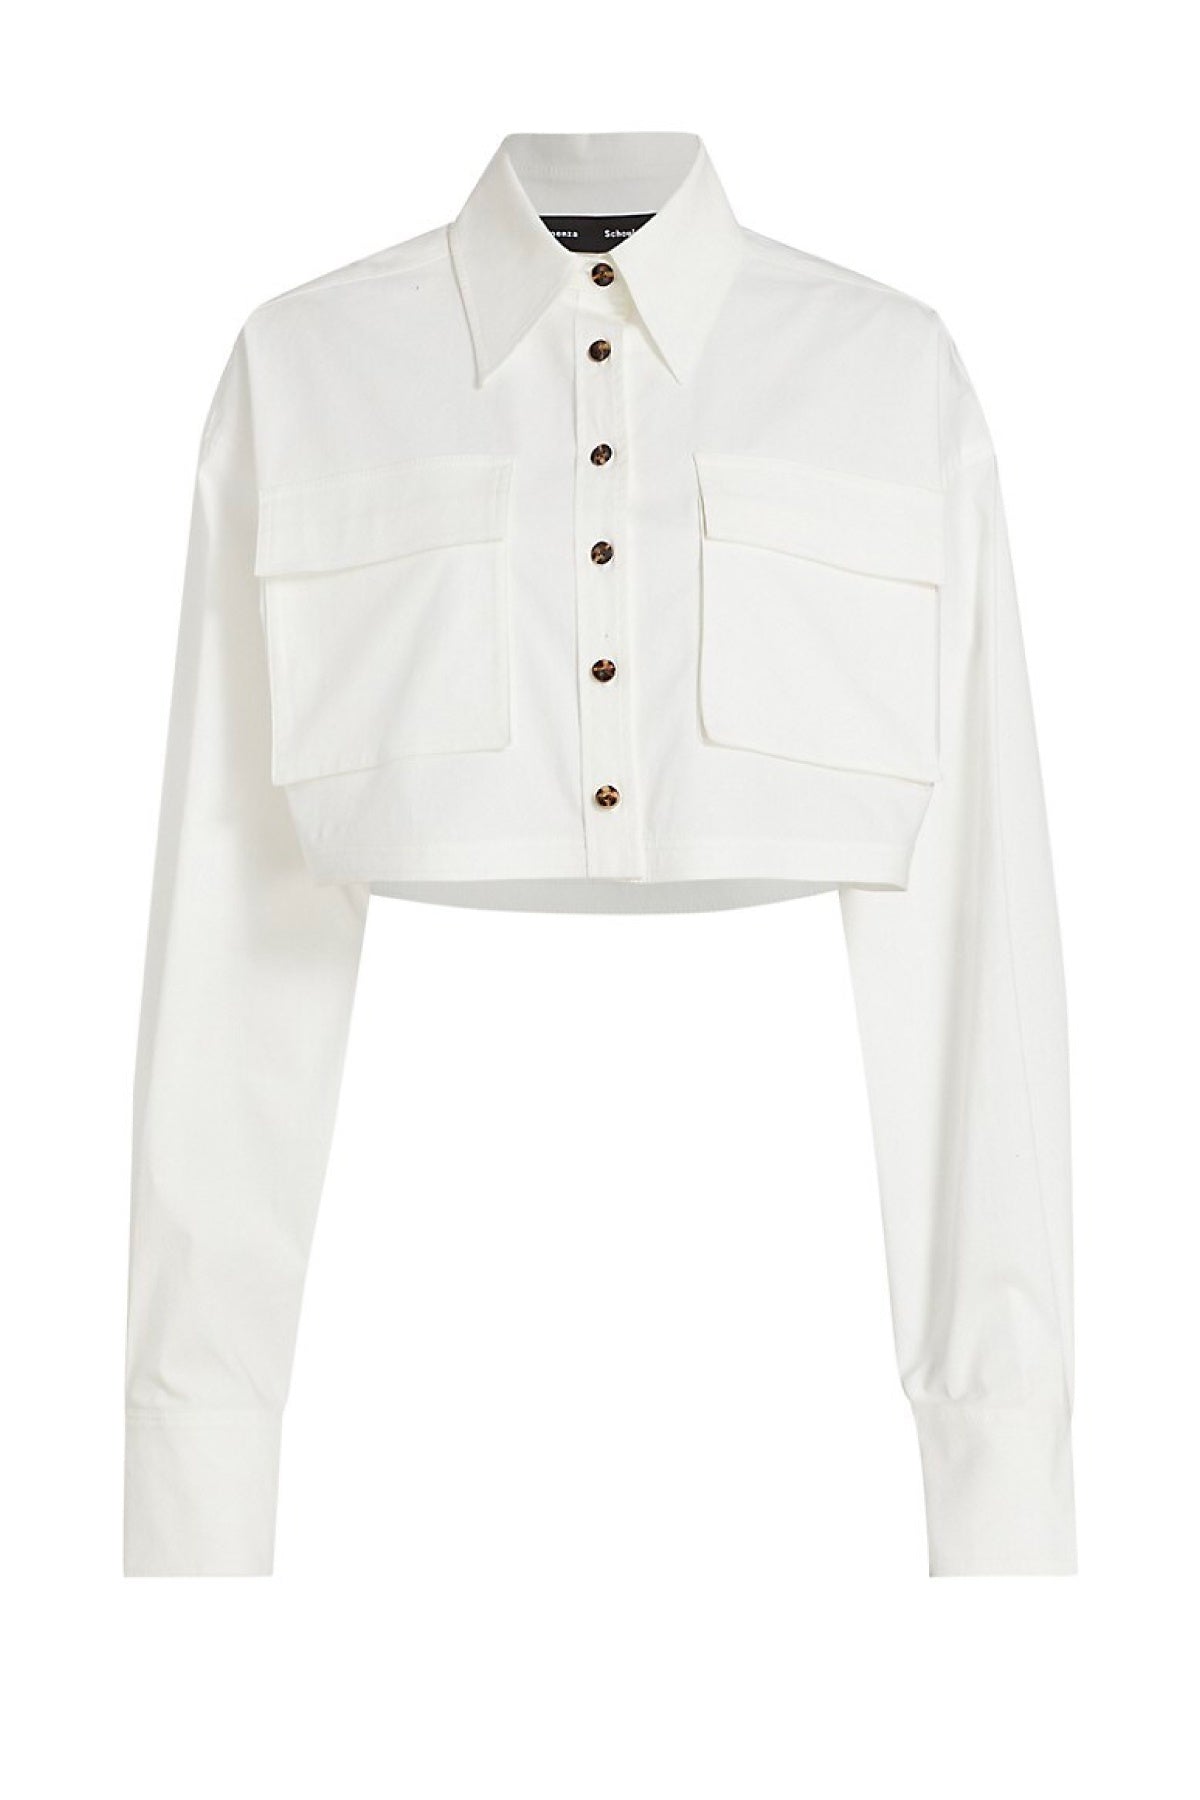 Proenza Schouler Crop Shirt - White